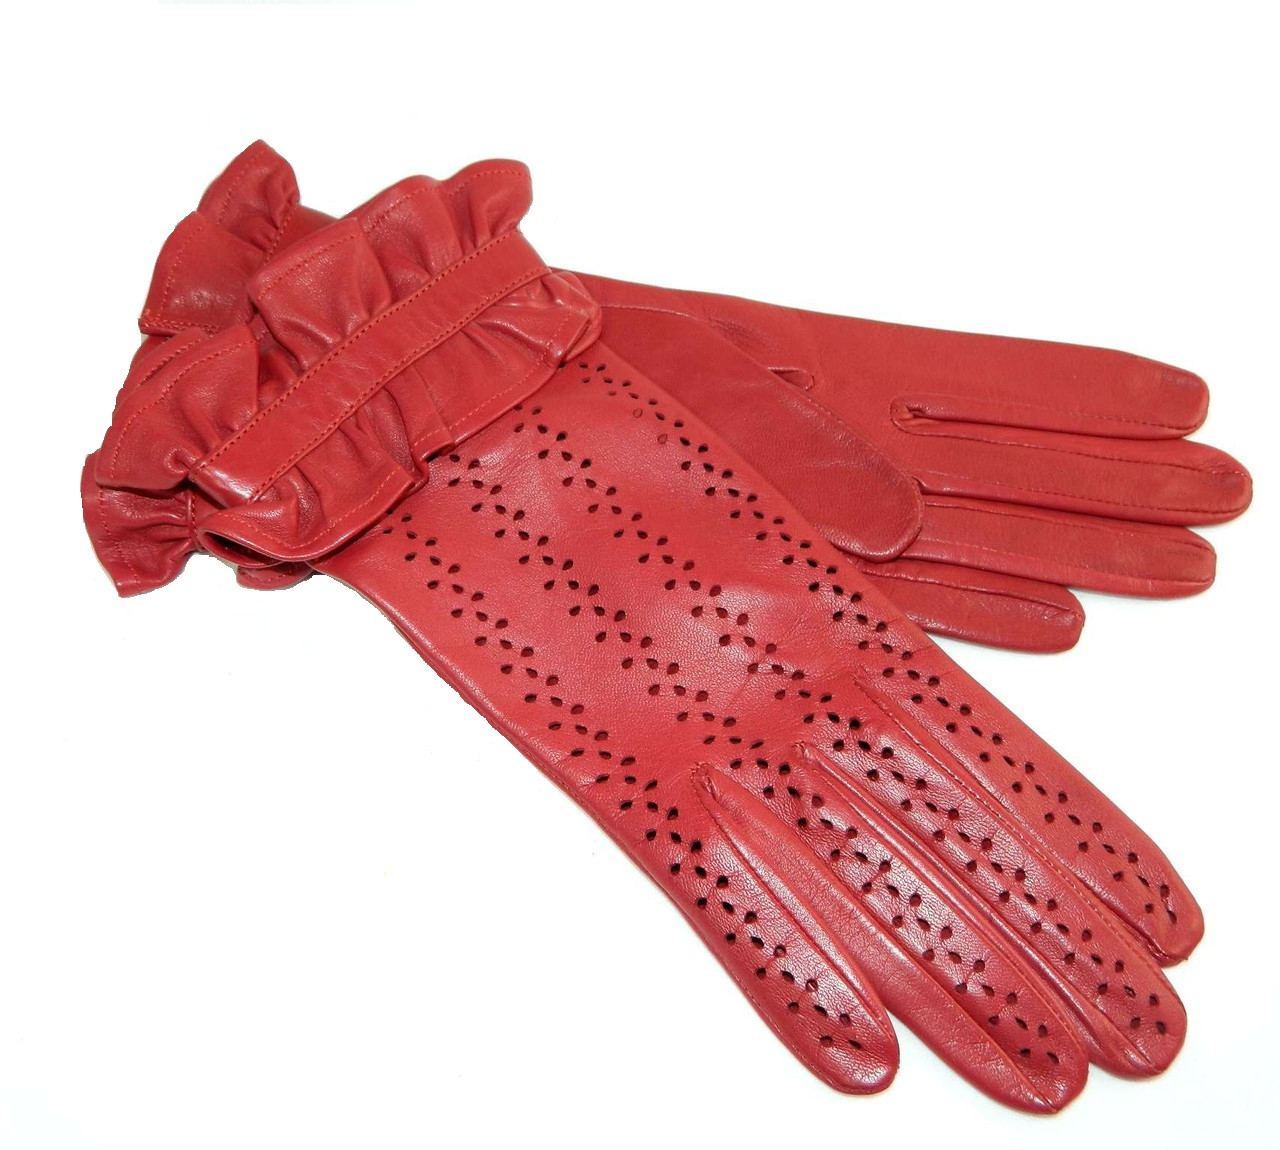 Подкладку перчаток купить. Alpa Gloves. Перчатки женские из натуральной кожи Alpa Gloves. Румынские кожаные перчатки Santex. Красные кожаные перчатки.